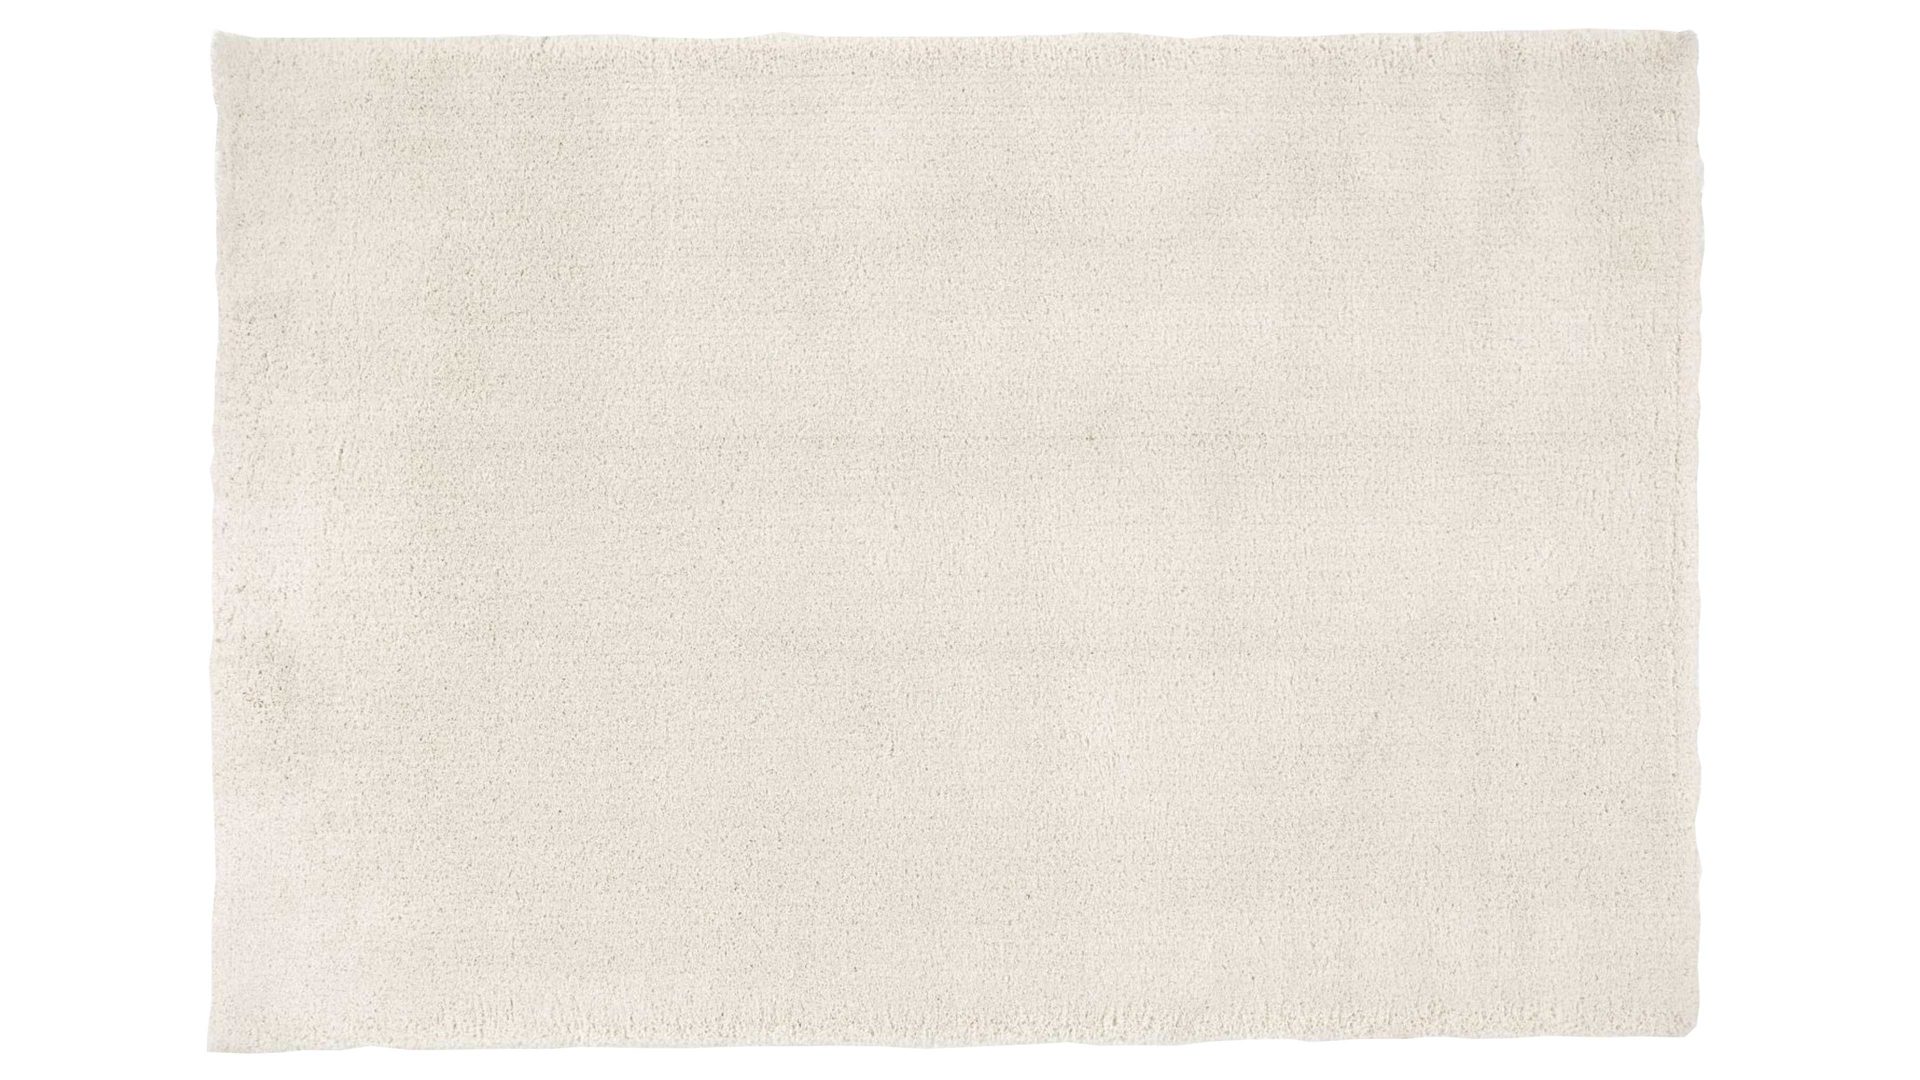 Shaggyteppich Oci aus Kunstfaser in Weiß Shaggyteppich Royal Shaggy für Ihre Wohnaccessoires cremefarbene Kunstfaser – ca. 120 x 170 cm